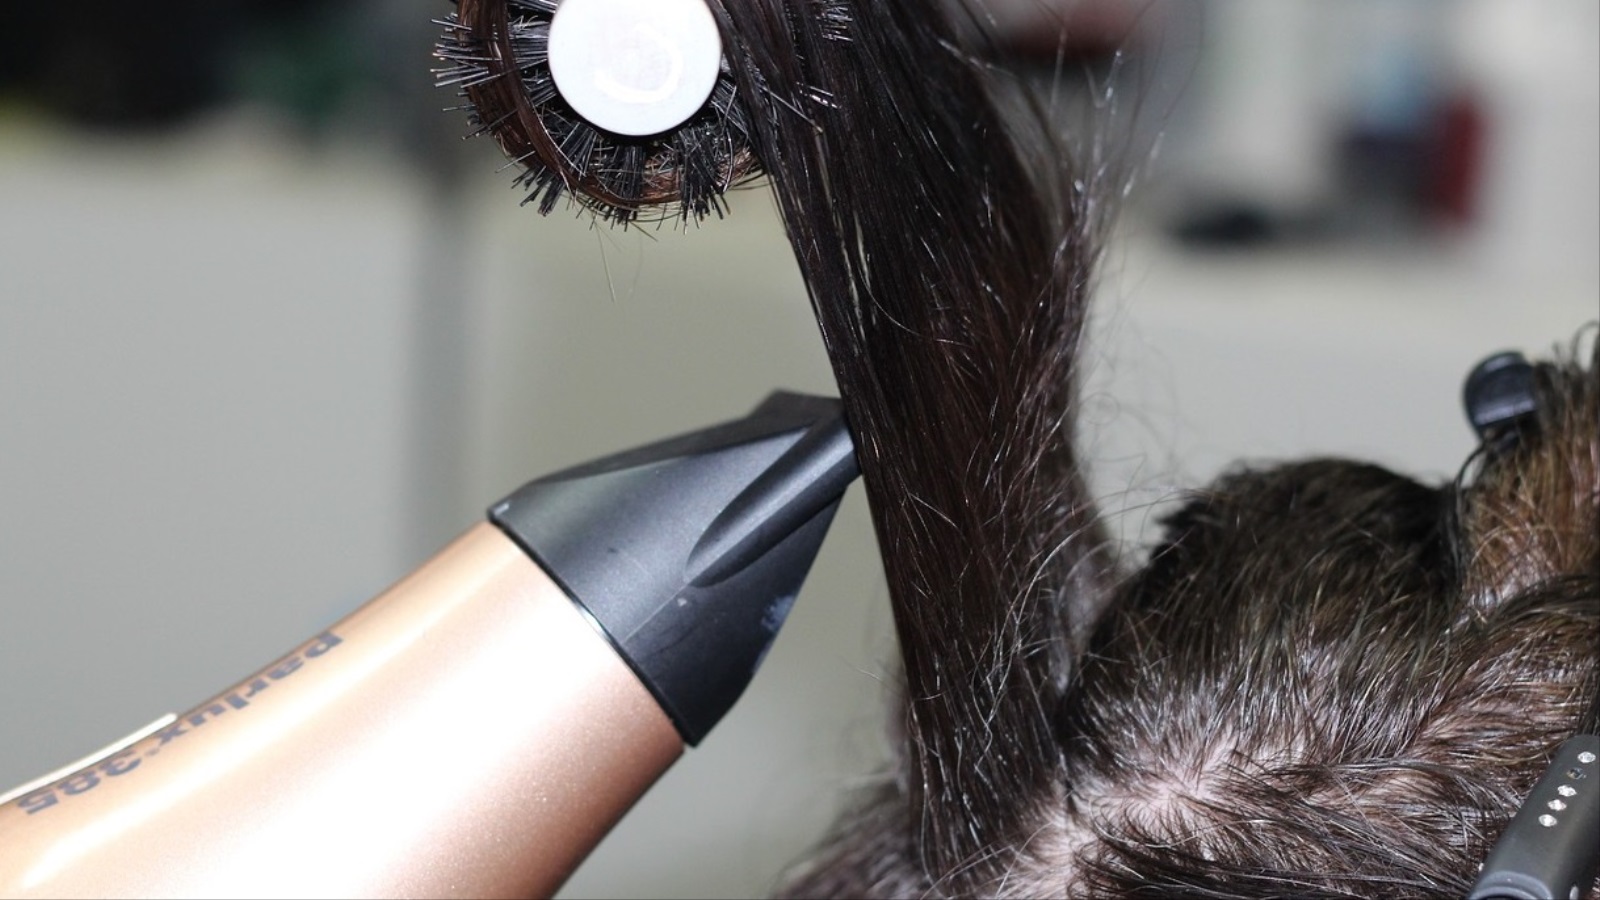 استخدام مجفف الشعر على مسافة قريبة قد يتسبب في حروق بفروة الرأس (بيكساباي)